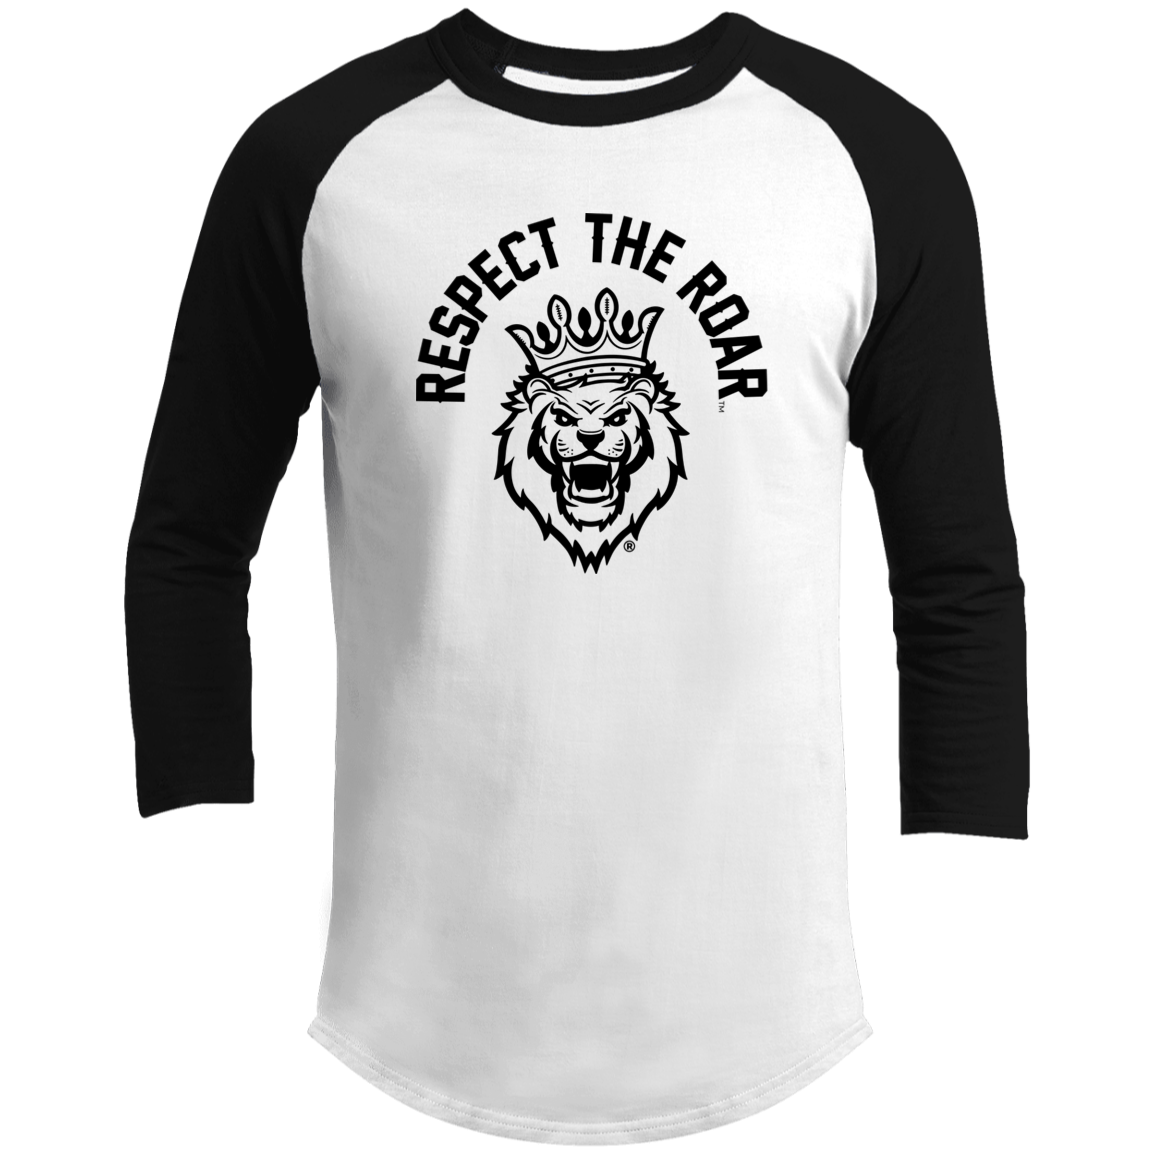 Respect The Roar - T200 3/4 Raglan Sleeve Shirt